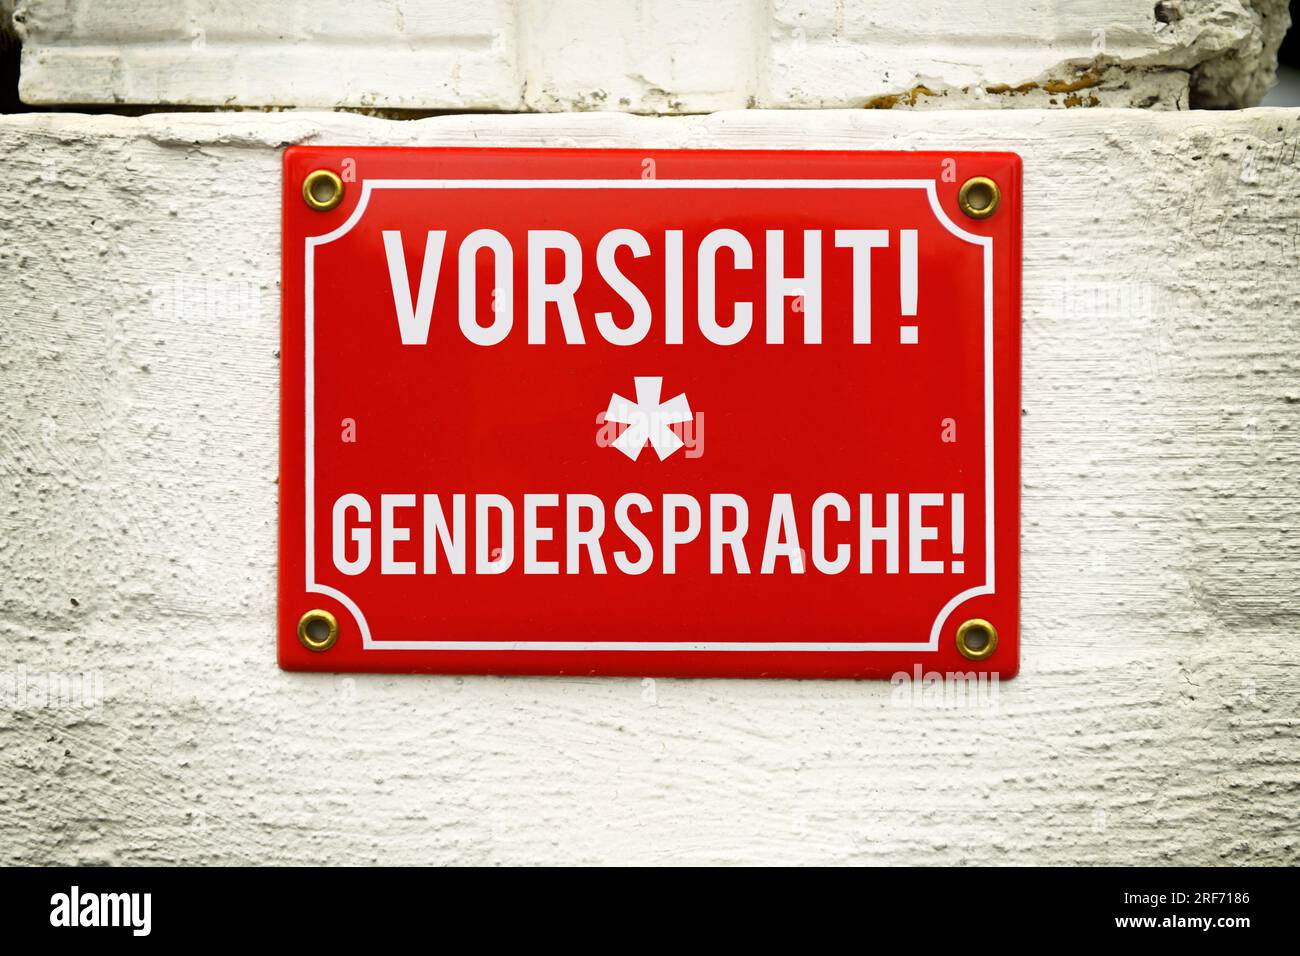 FOTOMONTAGE, Schild mit Aufschrift Vorsicht Gendersprache Foto Stock